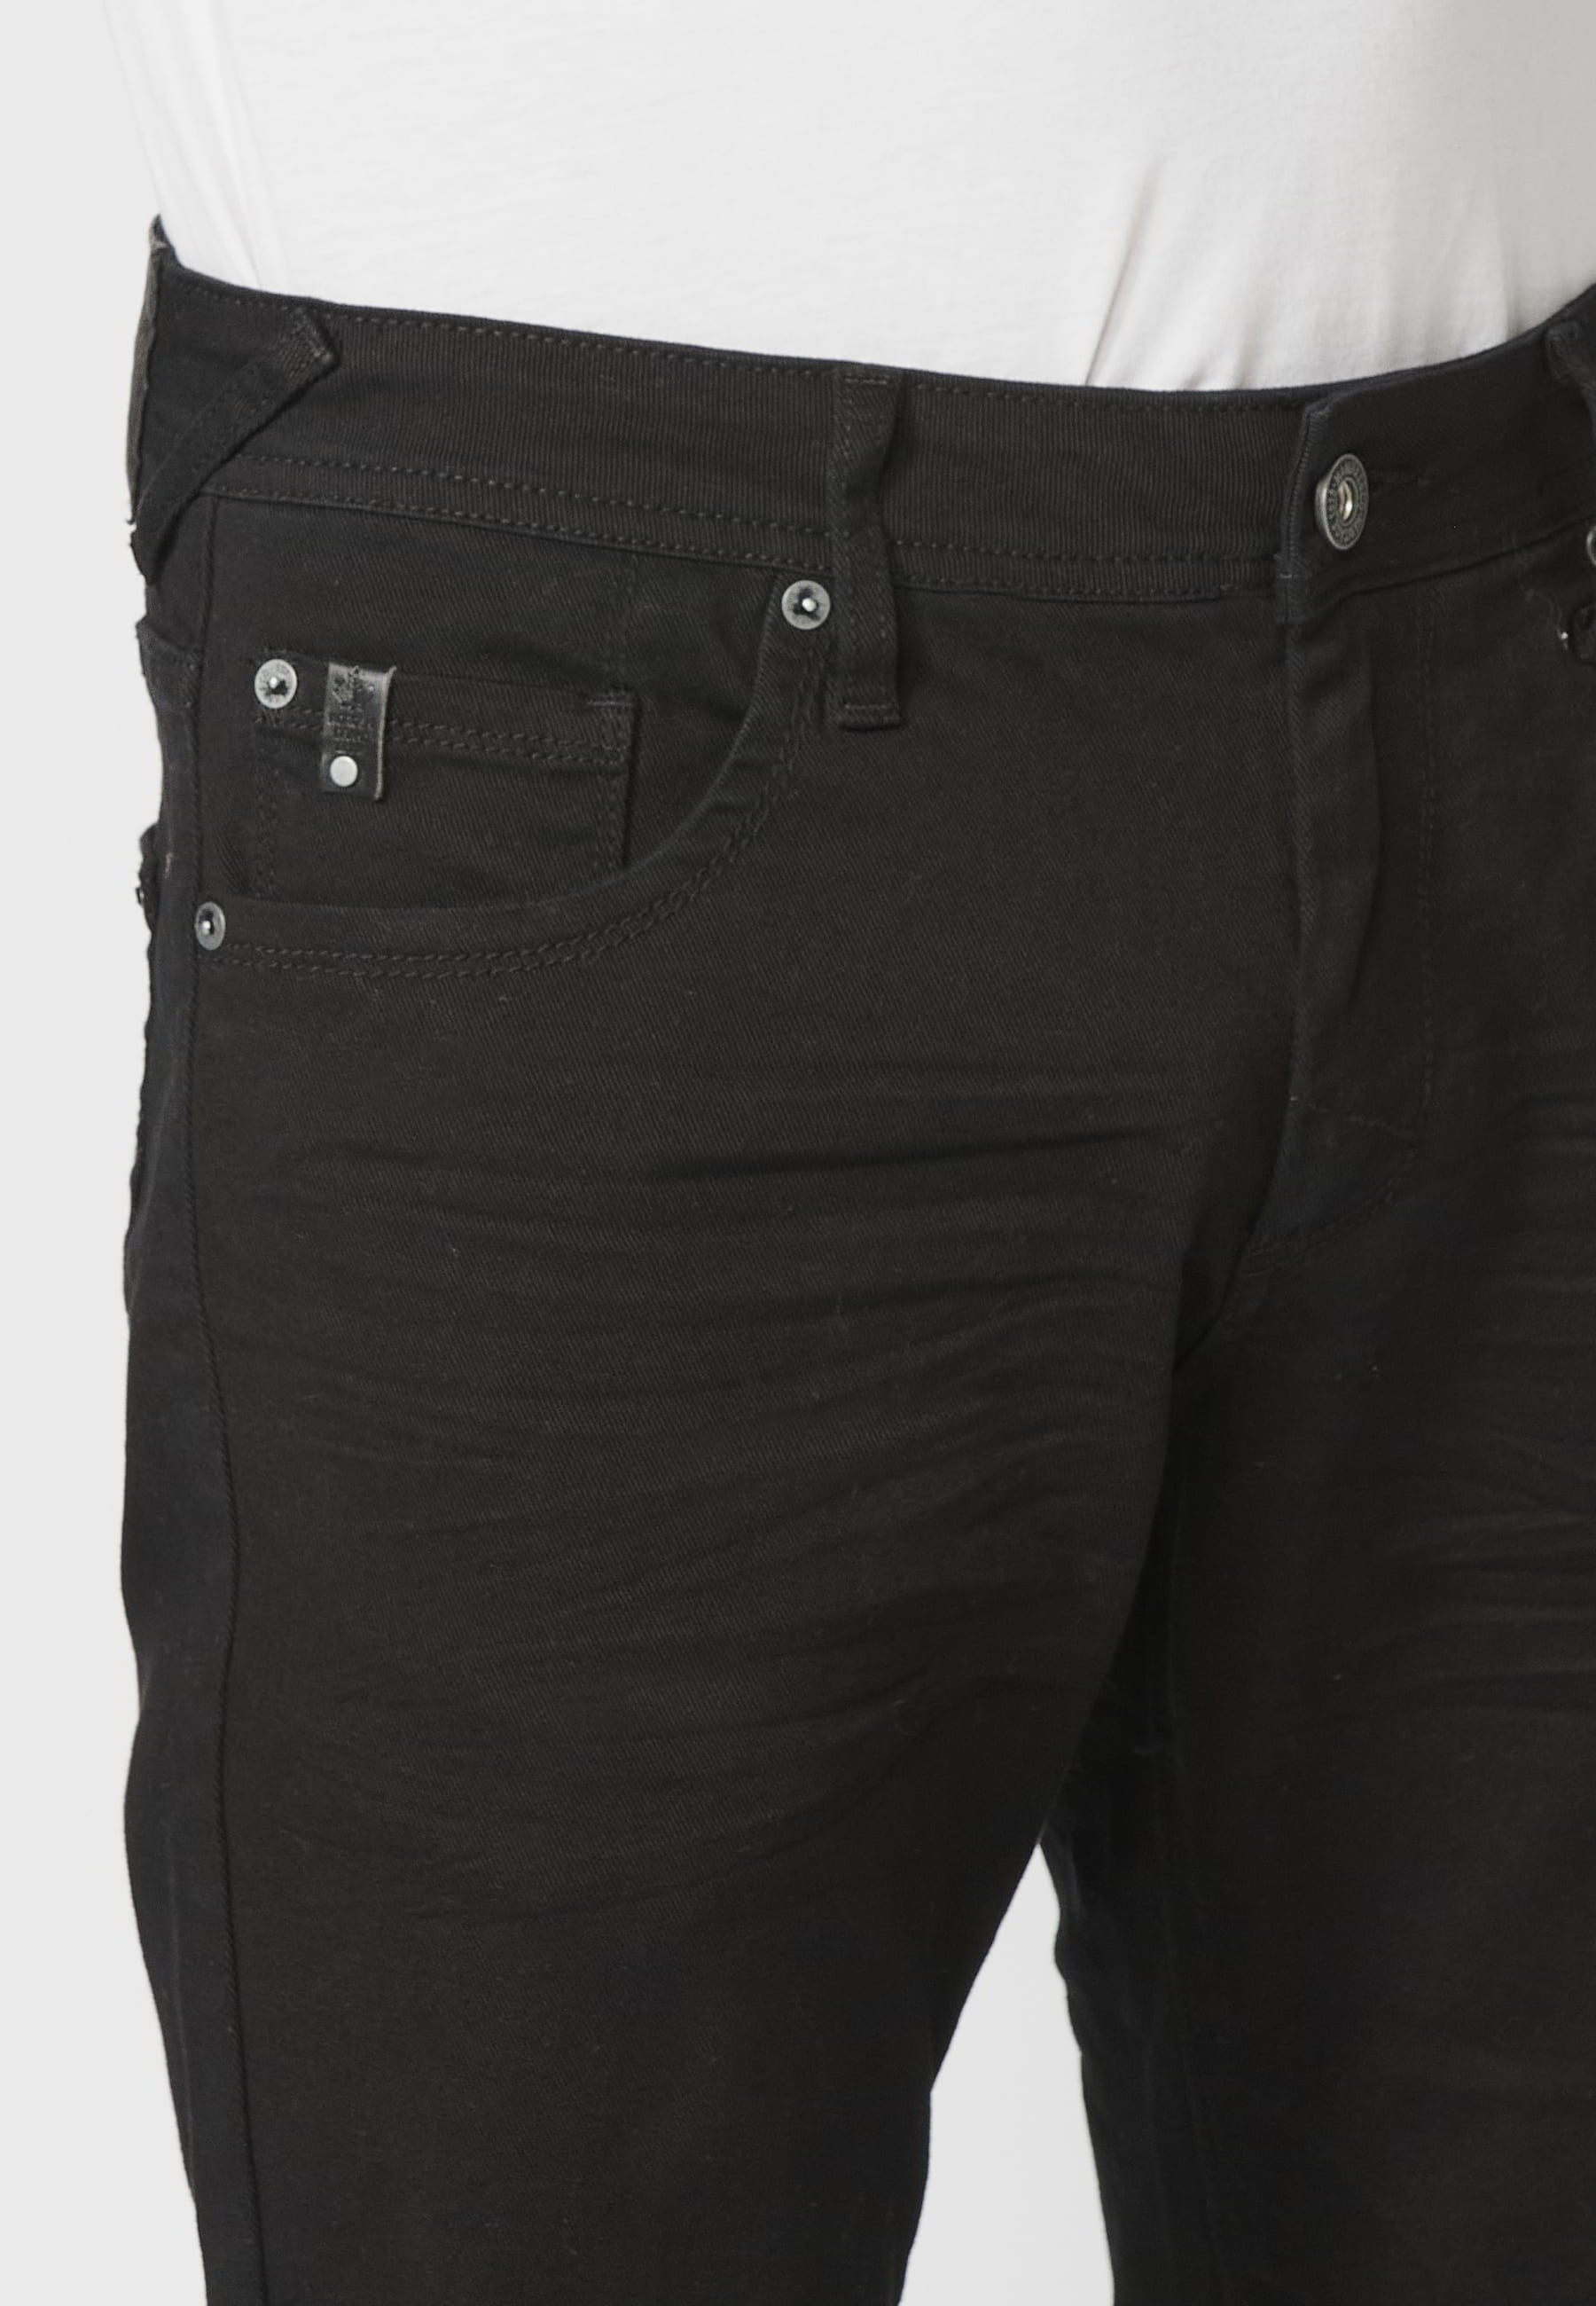 Pantalons llargs strech regular fit, amb cinc butxaques, color Negre, per a Home